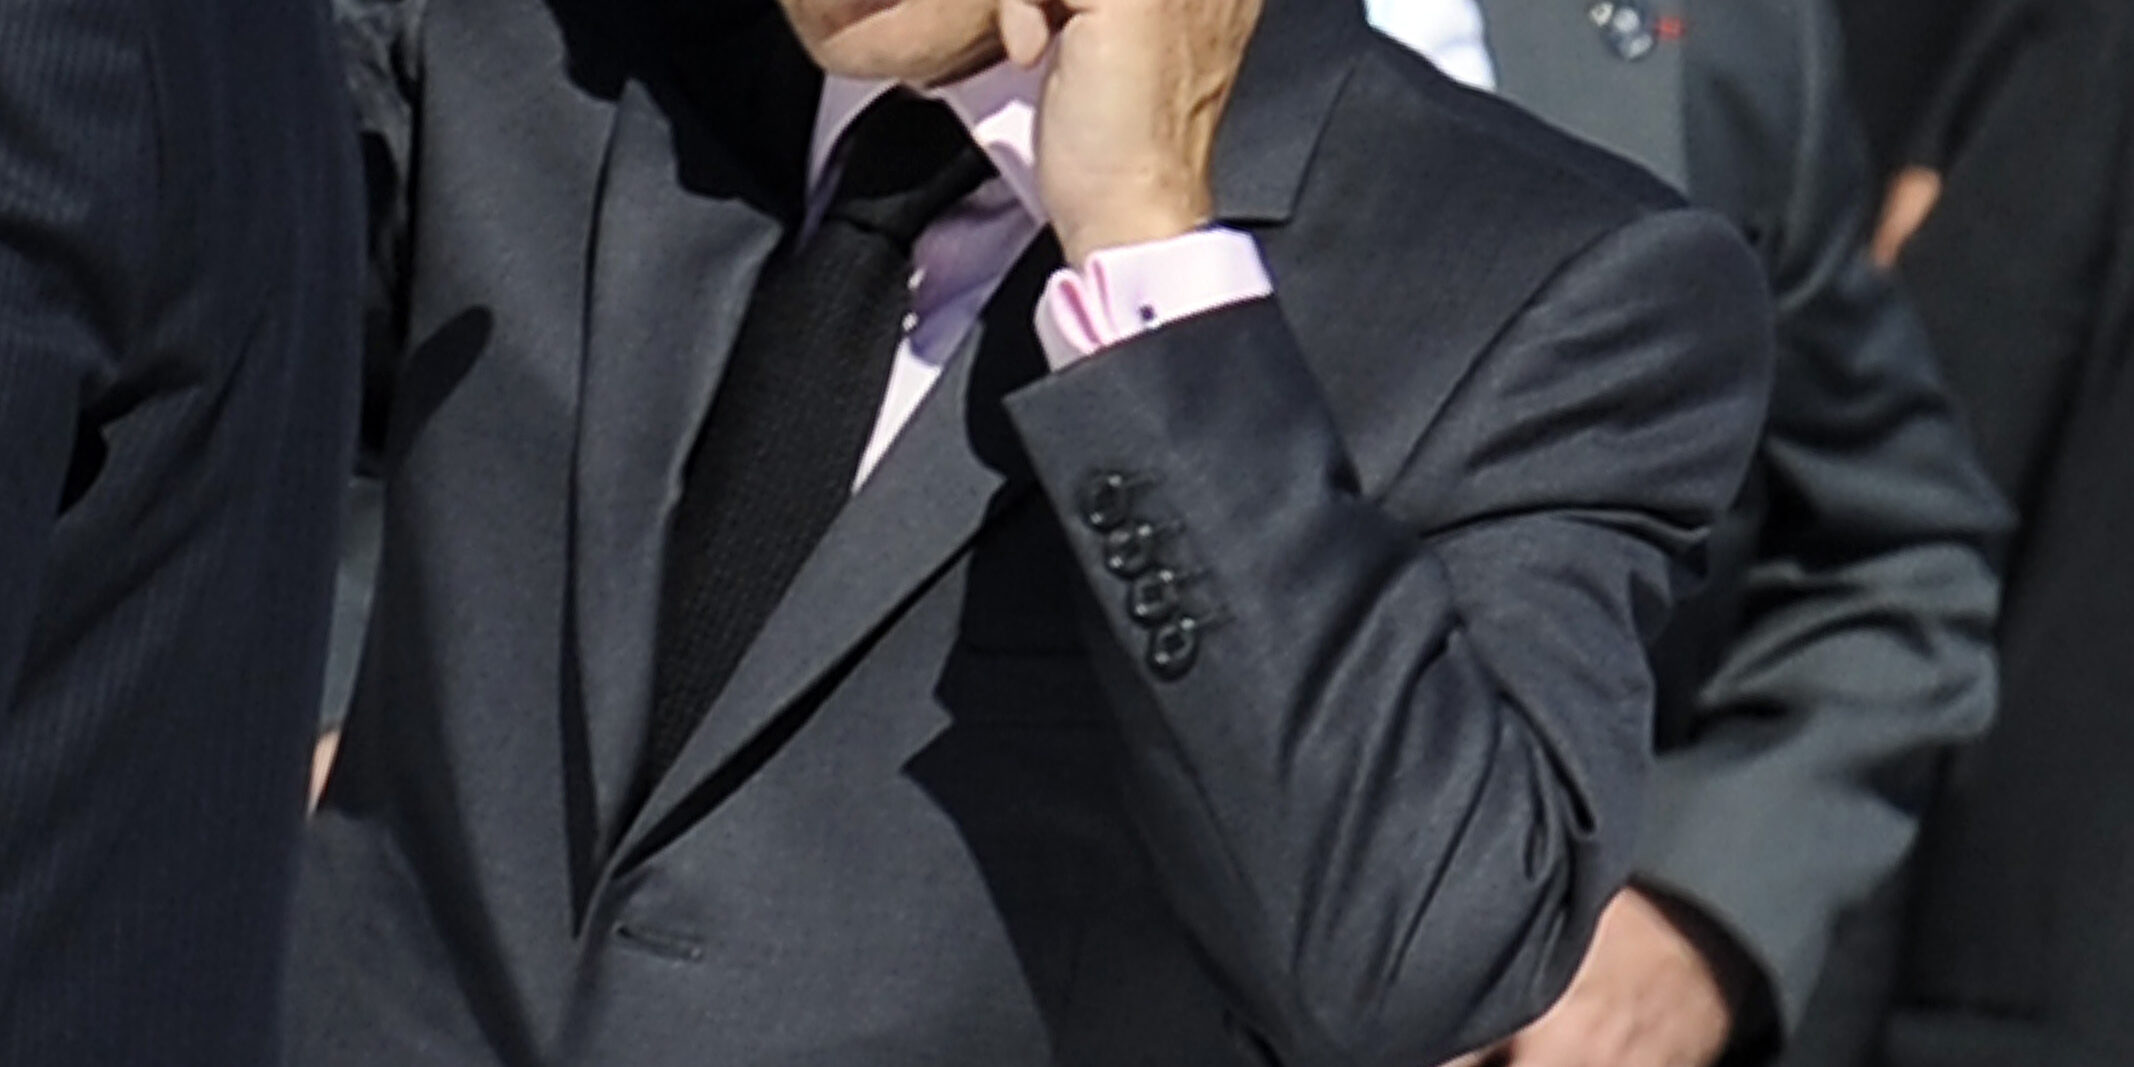 20090709-L'AQUILA-POL: G8: TUTTI LEADER A COPPITO, VERTICE L'AQUILA. Il  Presidente francese, Nicolas Sarkozy, arriva alla Main Conference mentre parla al telefono, per la riunione del G8, G5 e Egitto  oggi 09 luglio 2009, nel secondo giorno del vertice G8 all'Aquila. ANSA/MAURIZIO BRAMBATTI/on